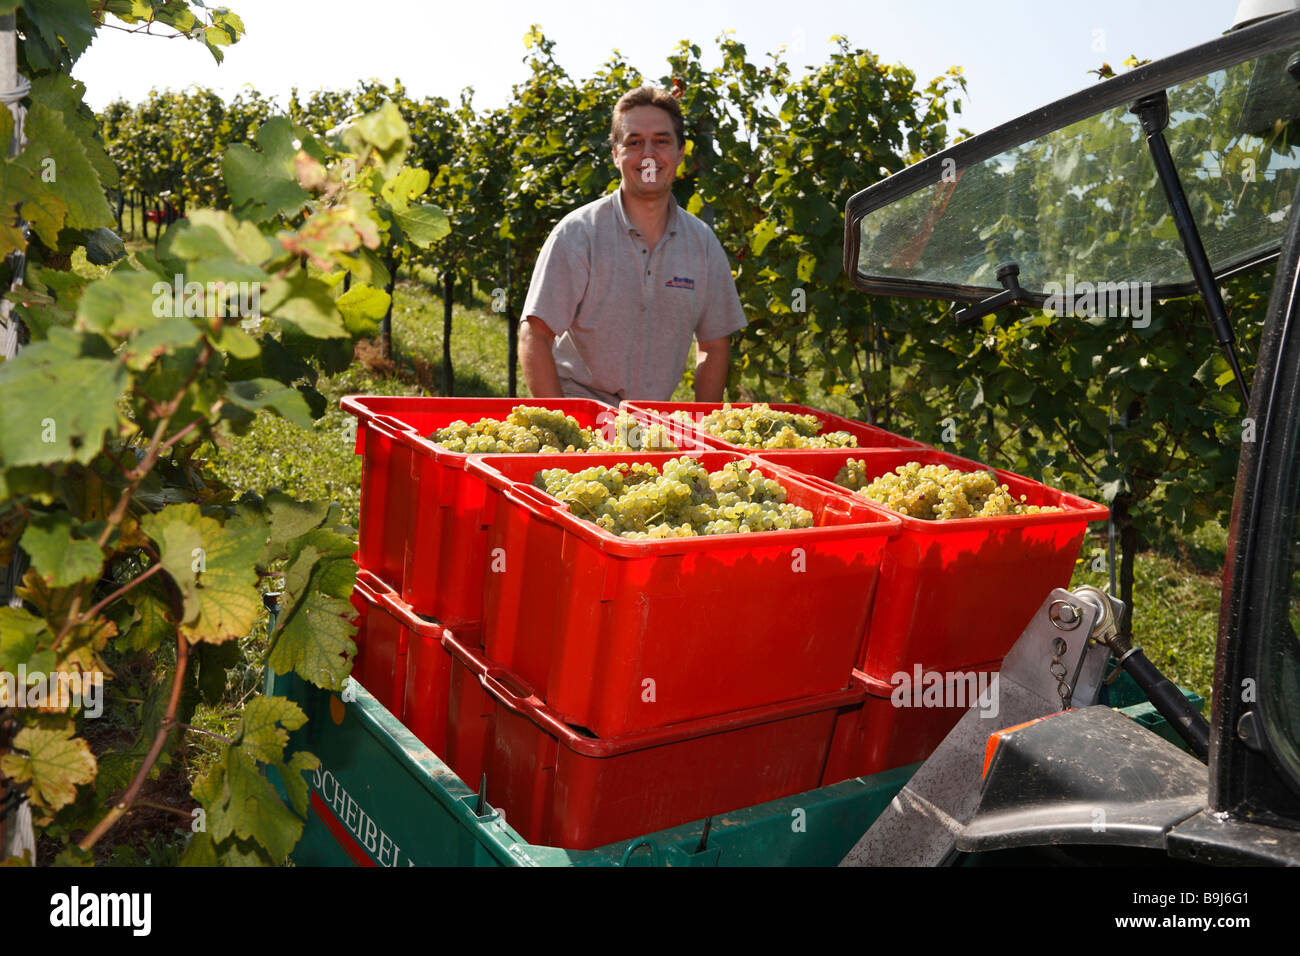 La récolte de raisins de Langegg homme, le sud de la Styrie, Autriche, Europe Banque D'Images